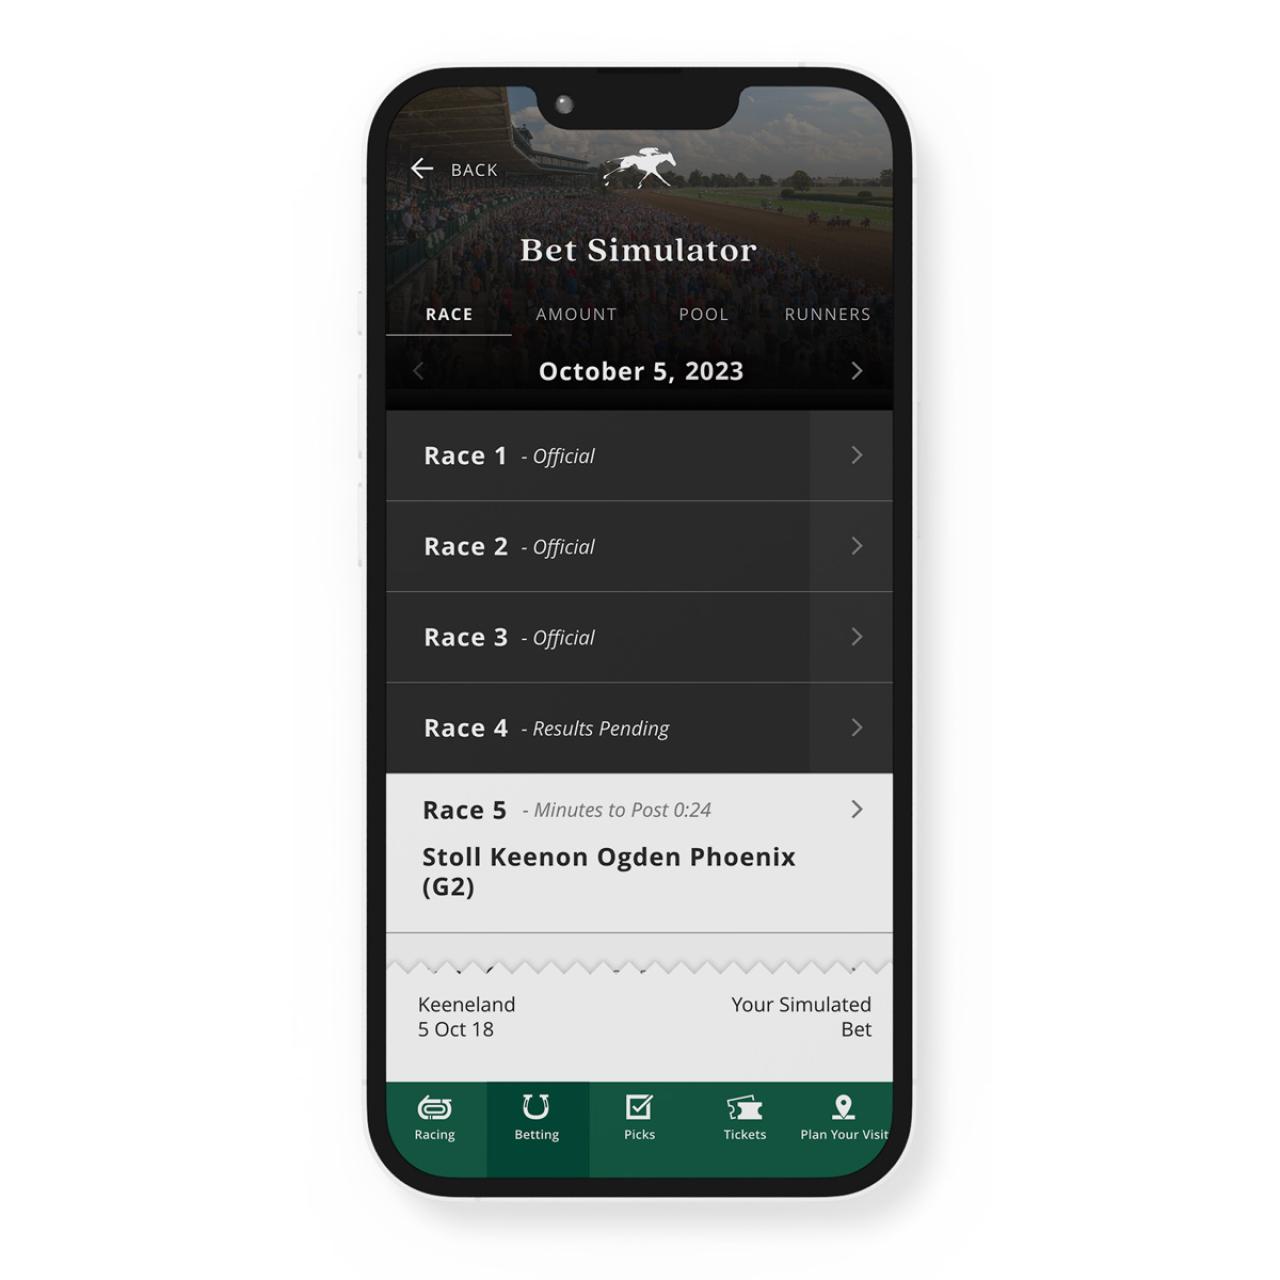 Bet simulator screen in the mobile app. 